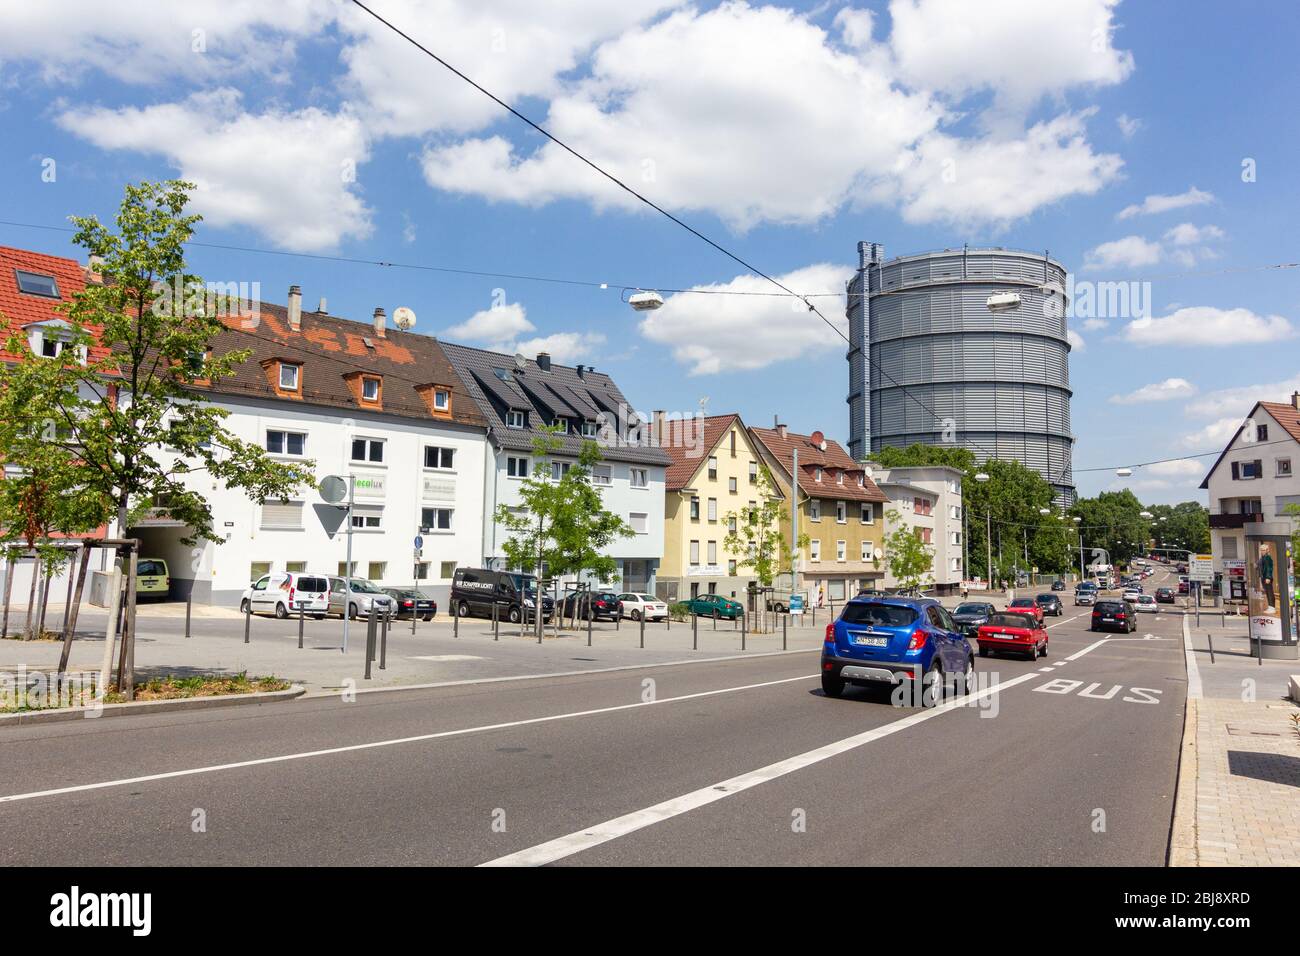 Stuttgart, Allemagne - juillet 2016 : rue animée avec de vieux bâtiments allemands du quartier de Gaisburg à Stuttgart-Ost avec vue sur la tour de Stuttgart de Gaskessel Banque D'Images